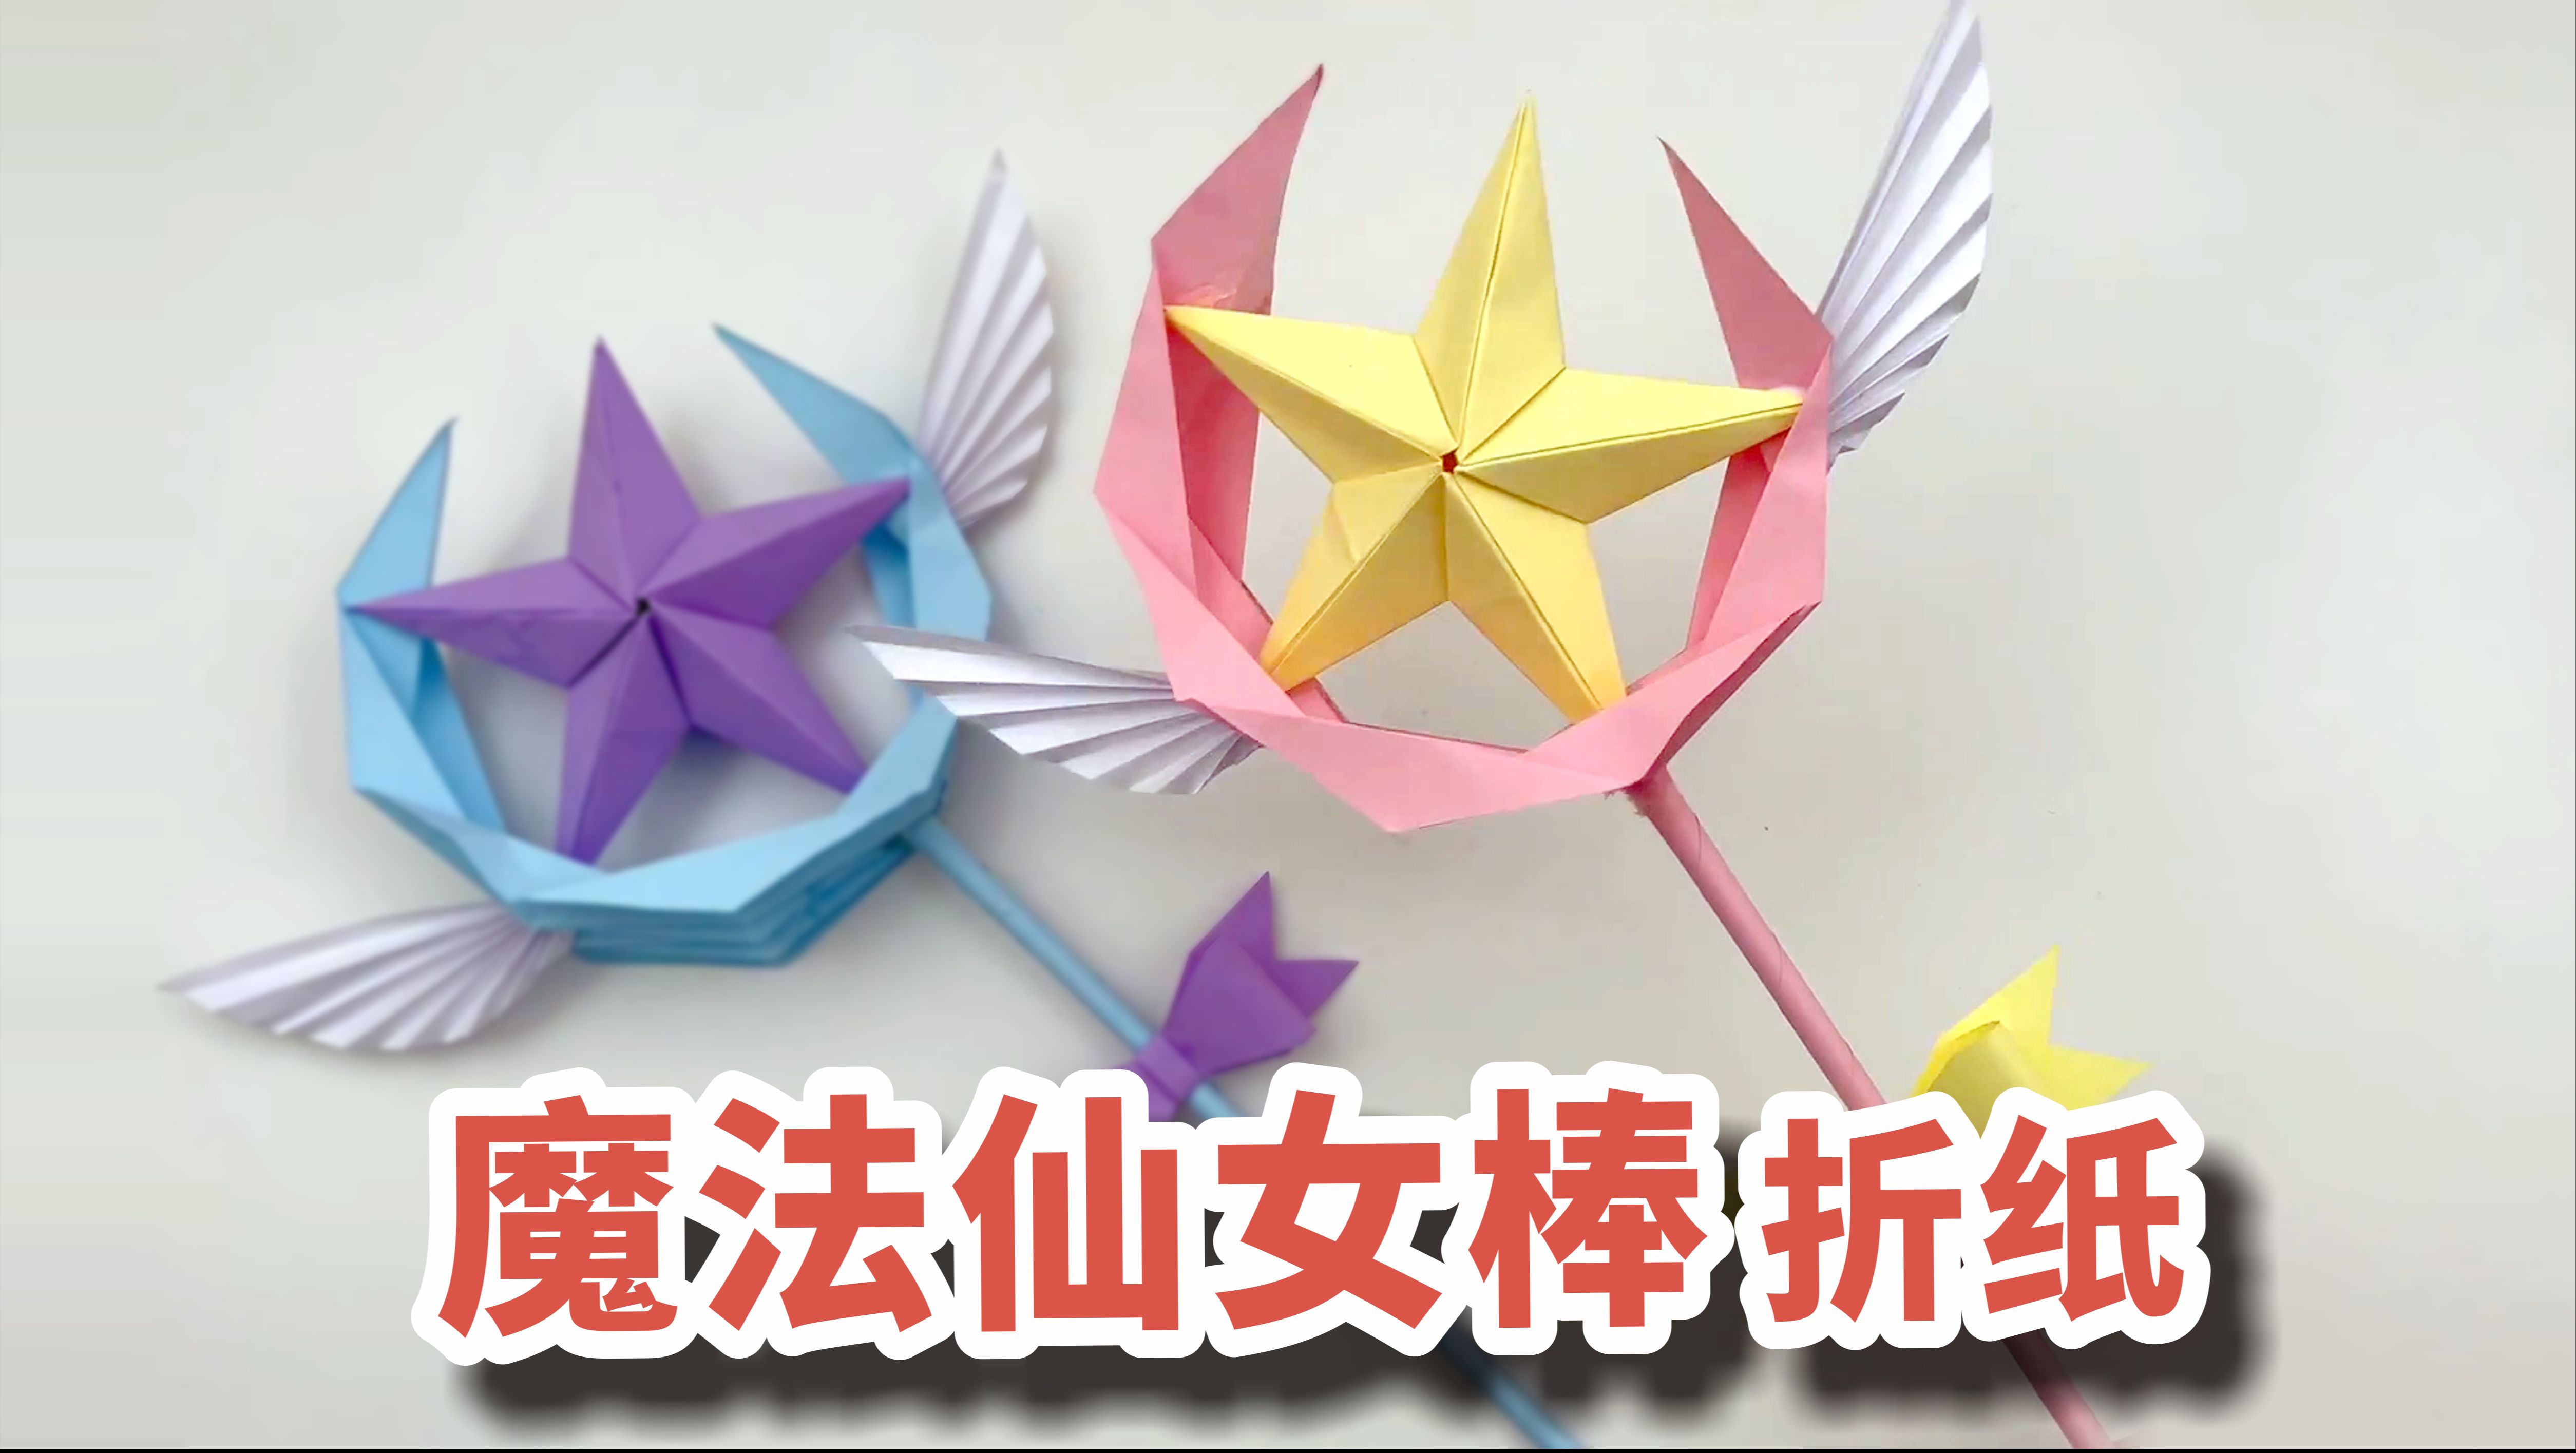 超漂亮的魔法仙女棒折纸,做法简单还好玩!